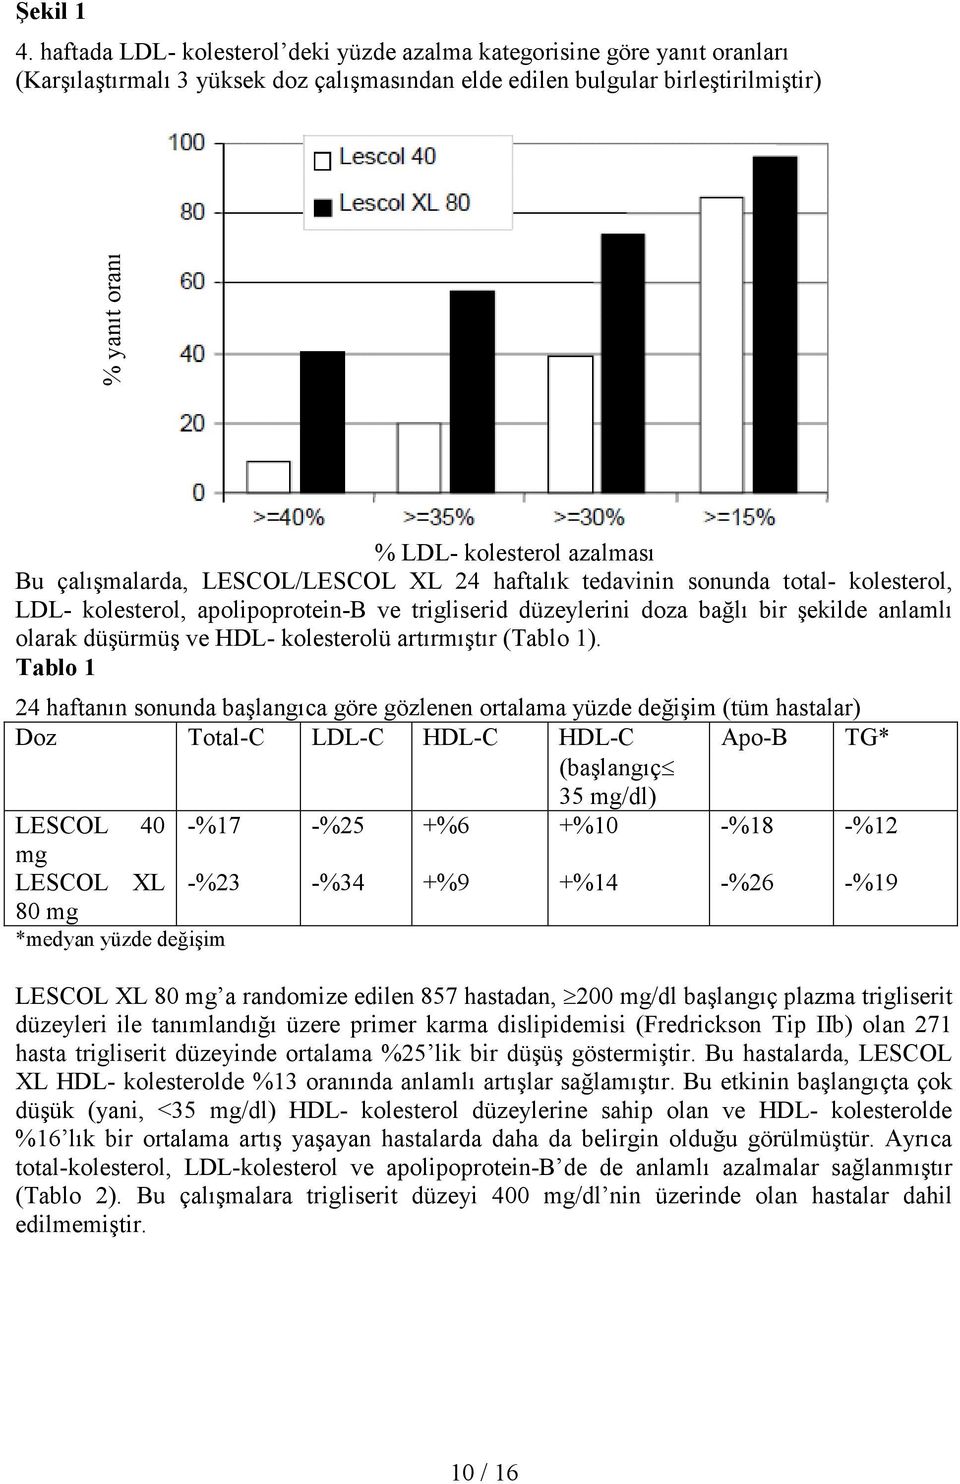 Bu çalışmalarda, LESCOL/LESCOL XL 24 haftalık tedavinin sonunda total- kolesterol, LDL- kolesterol, apolipoprotein-b ve trigliserid düzeylerini doza bağlı bir şekilde anlamlı olarak düşürmüş ve HDL-